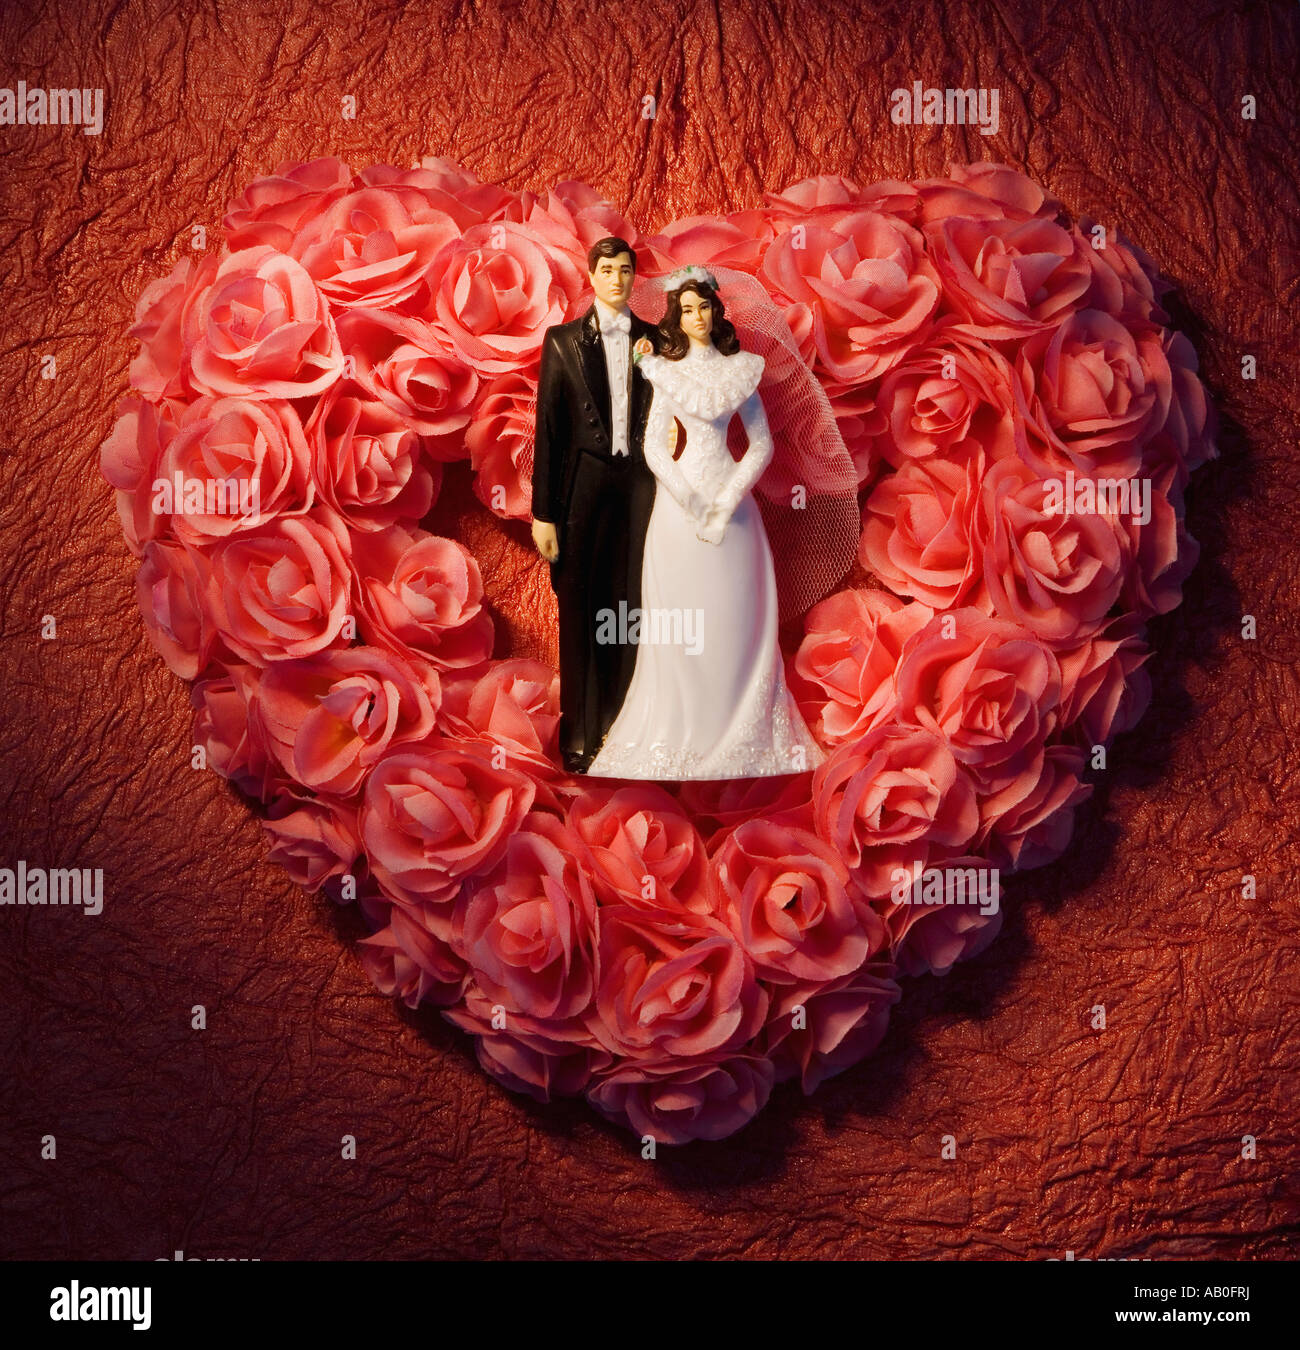 Herzförmige Blumenkranz mit Braut und Bräutigam Figuren Stockfoto